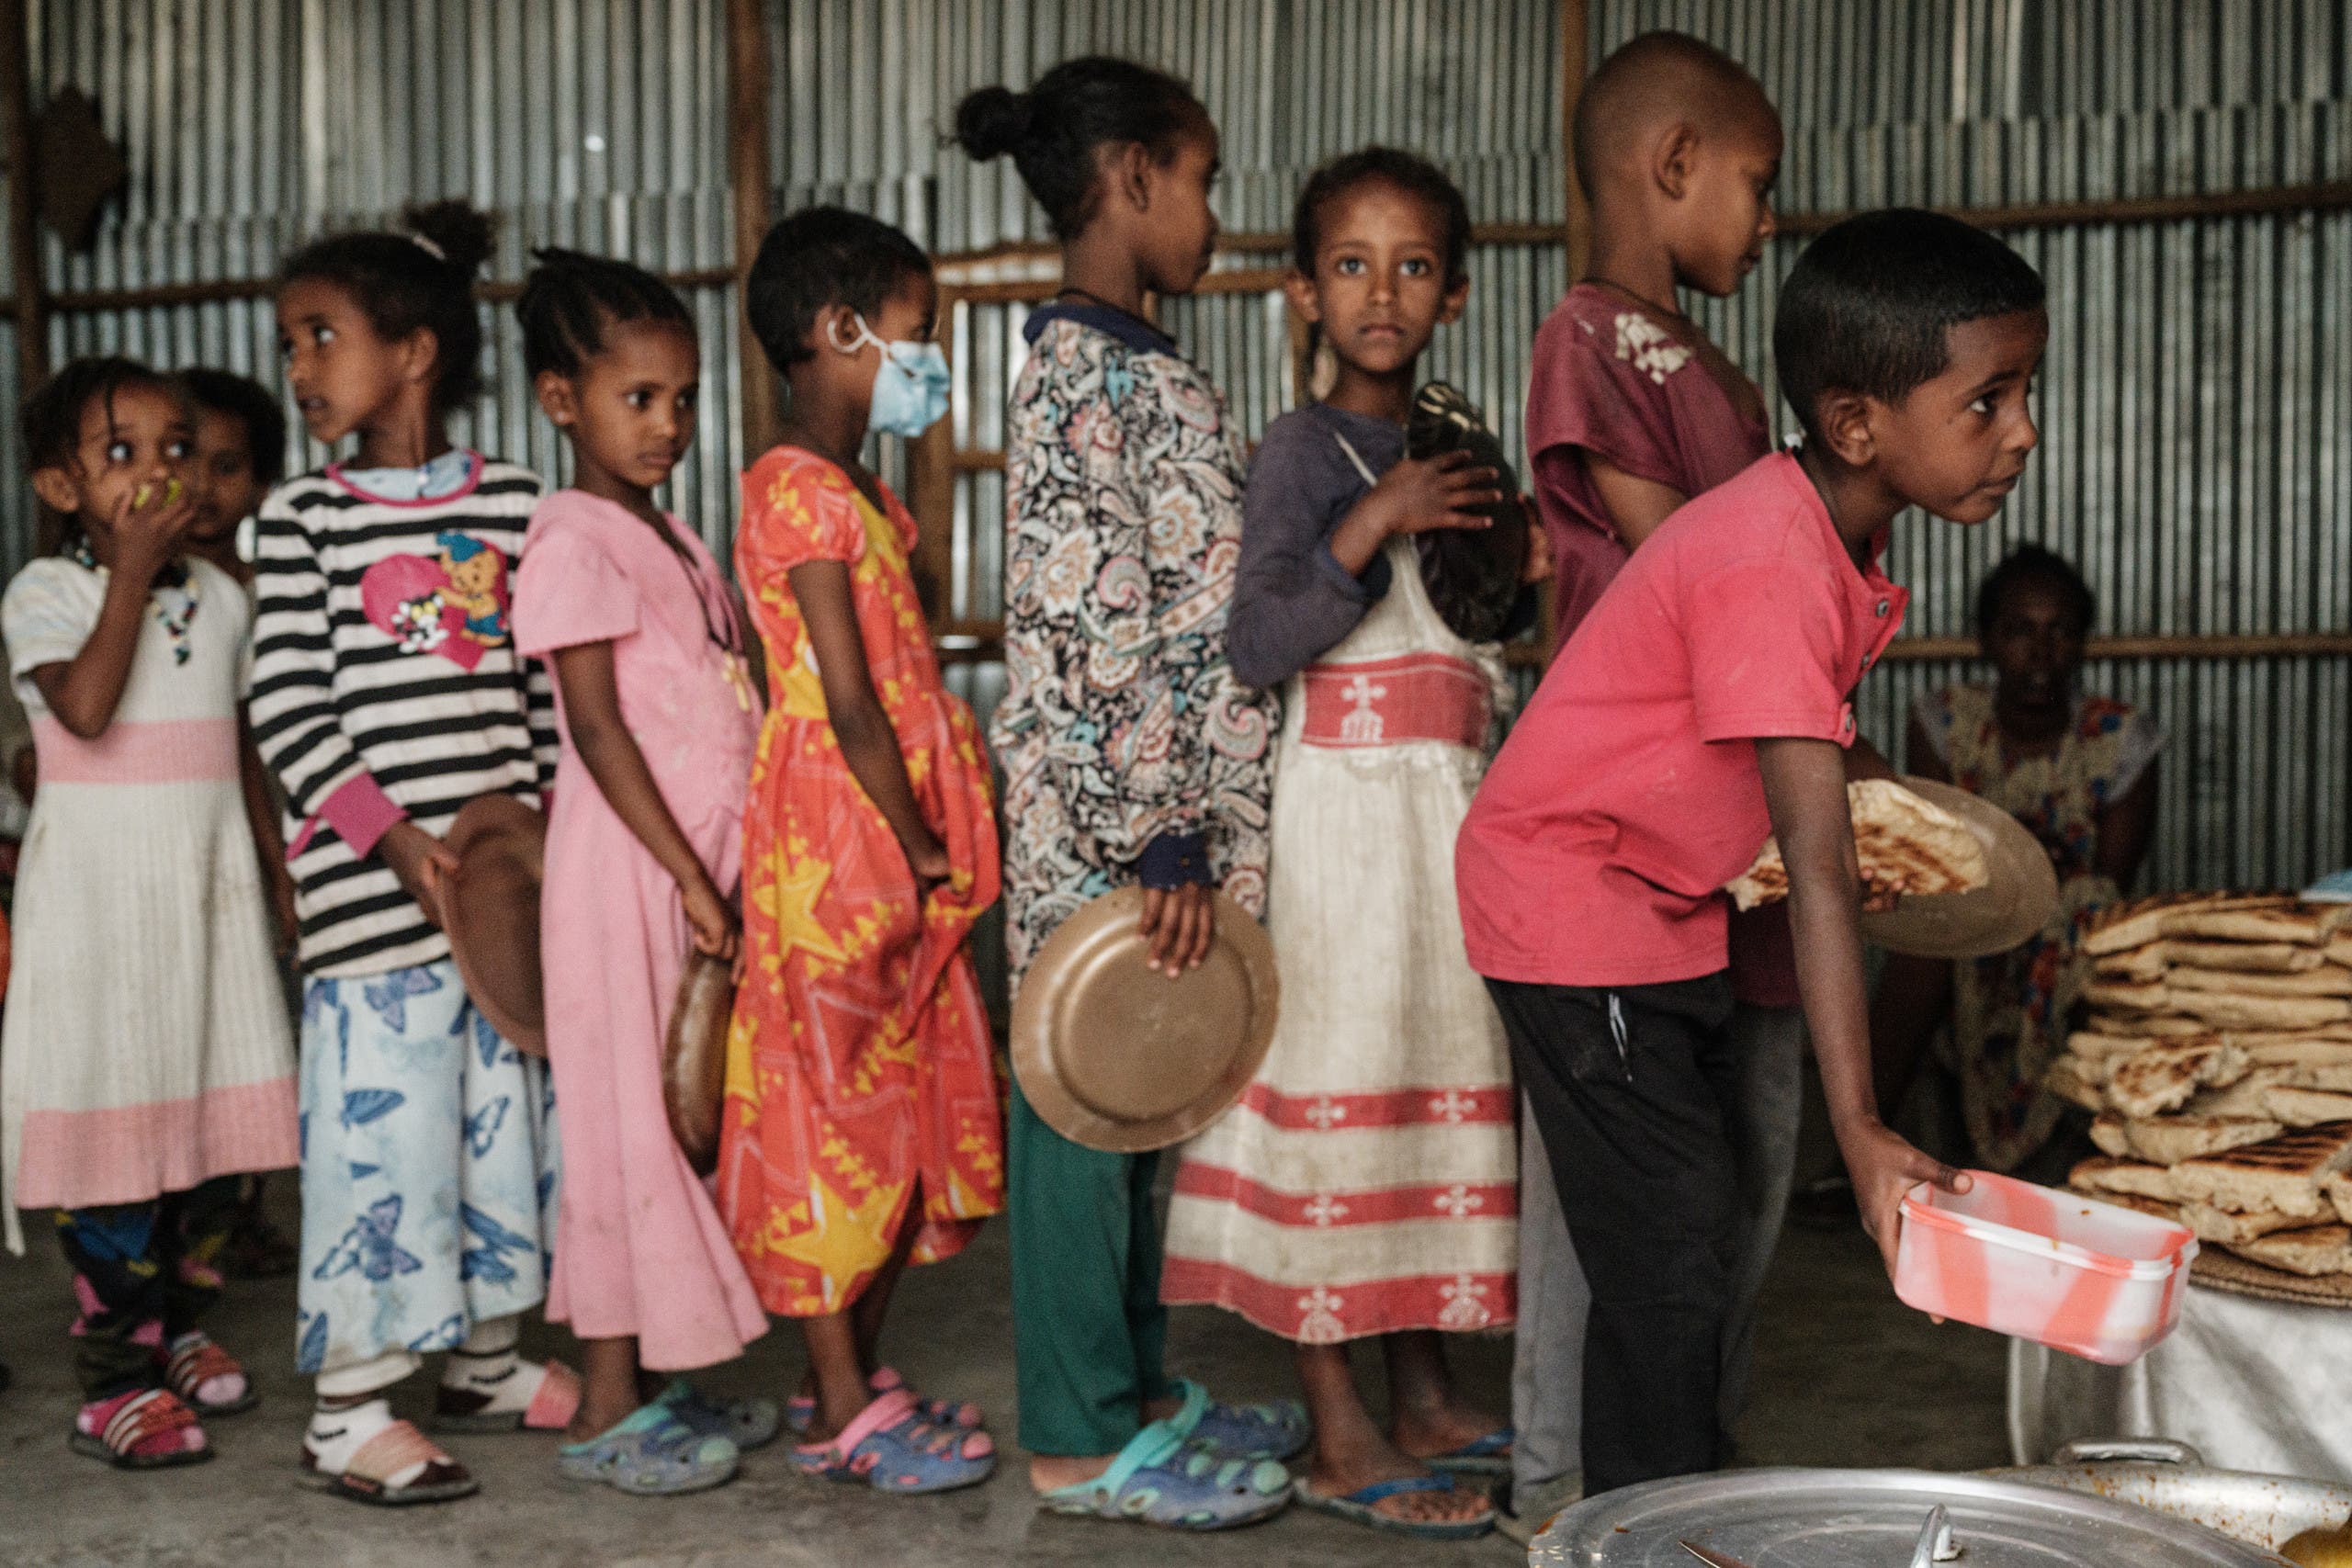 أطفال نزحوا بسبب القتال في تيغراي ينتظرون للحصول على وجبة غذائية في ميكيلي